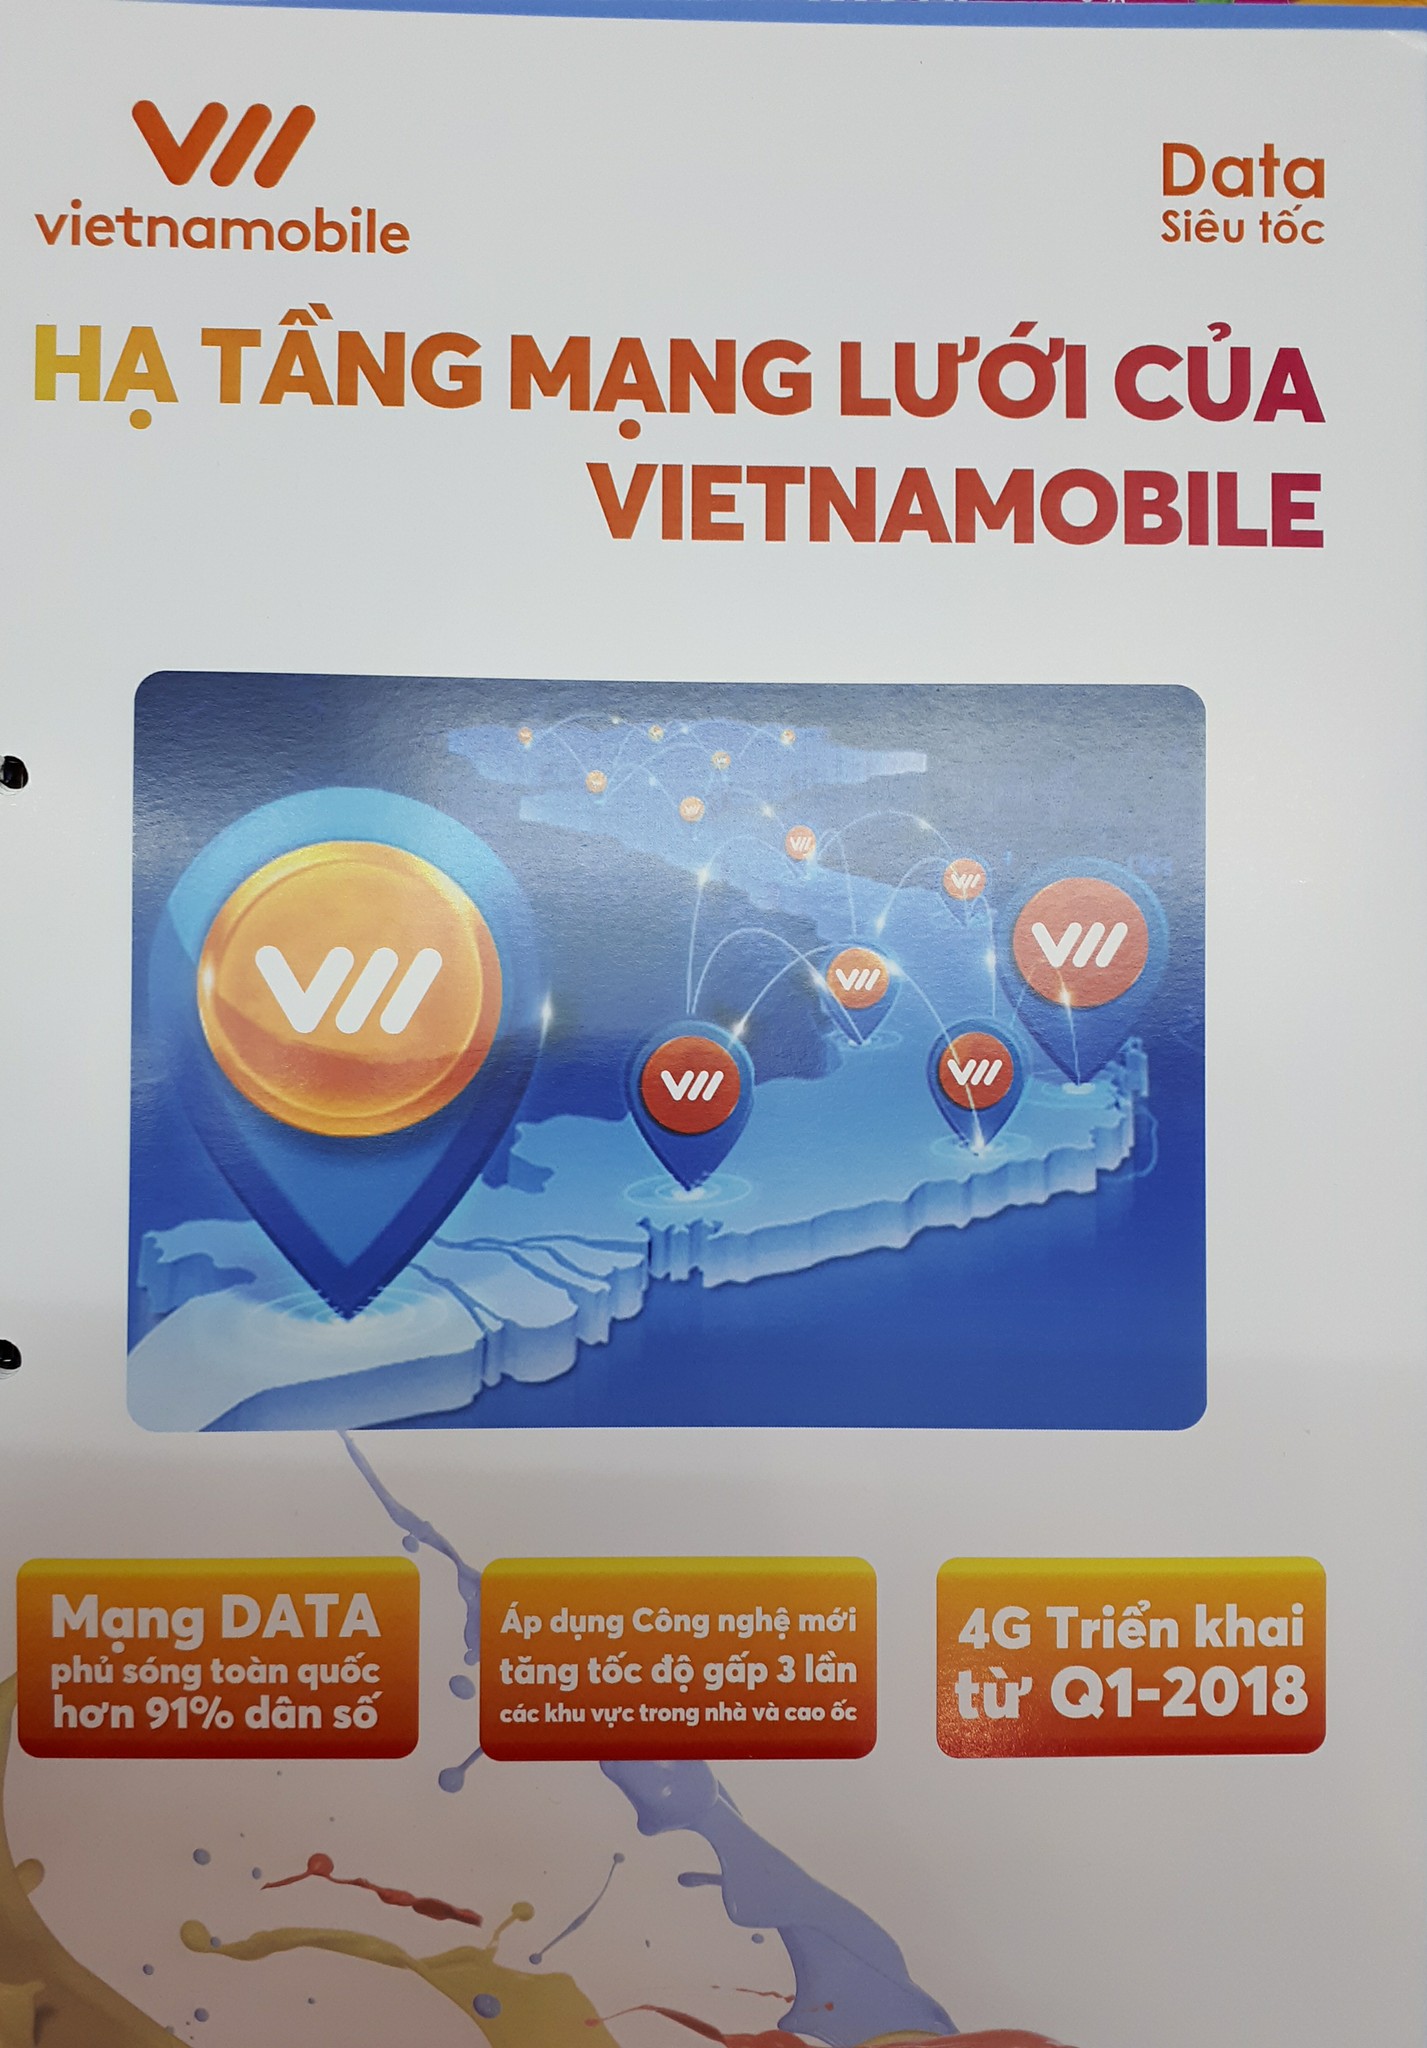 Vietnamobile 4G